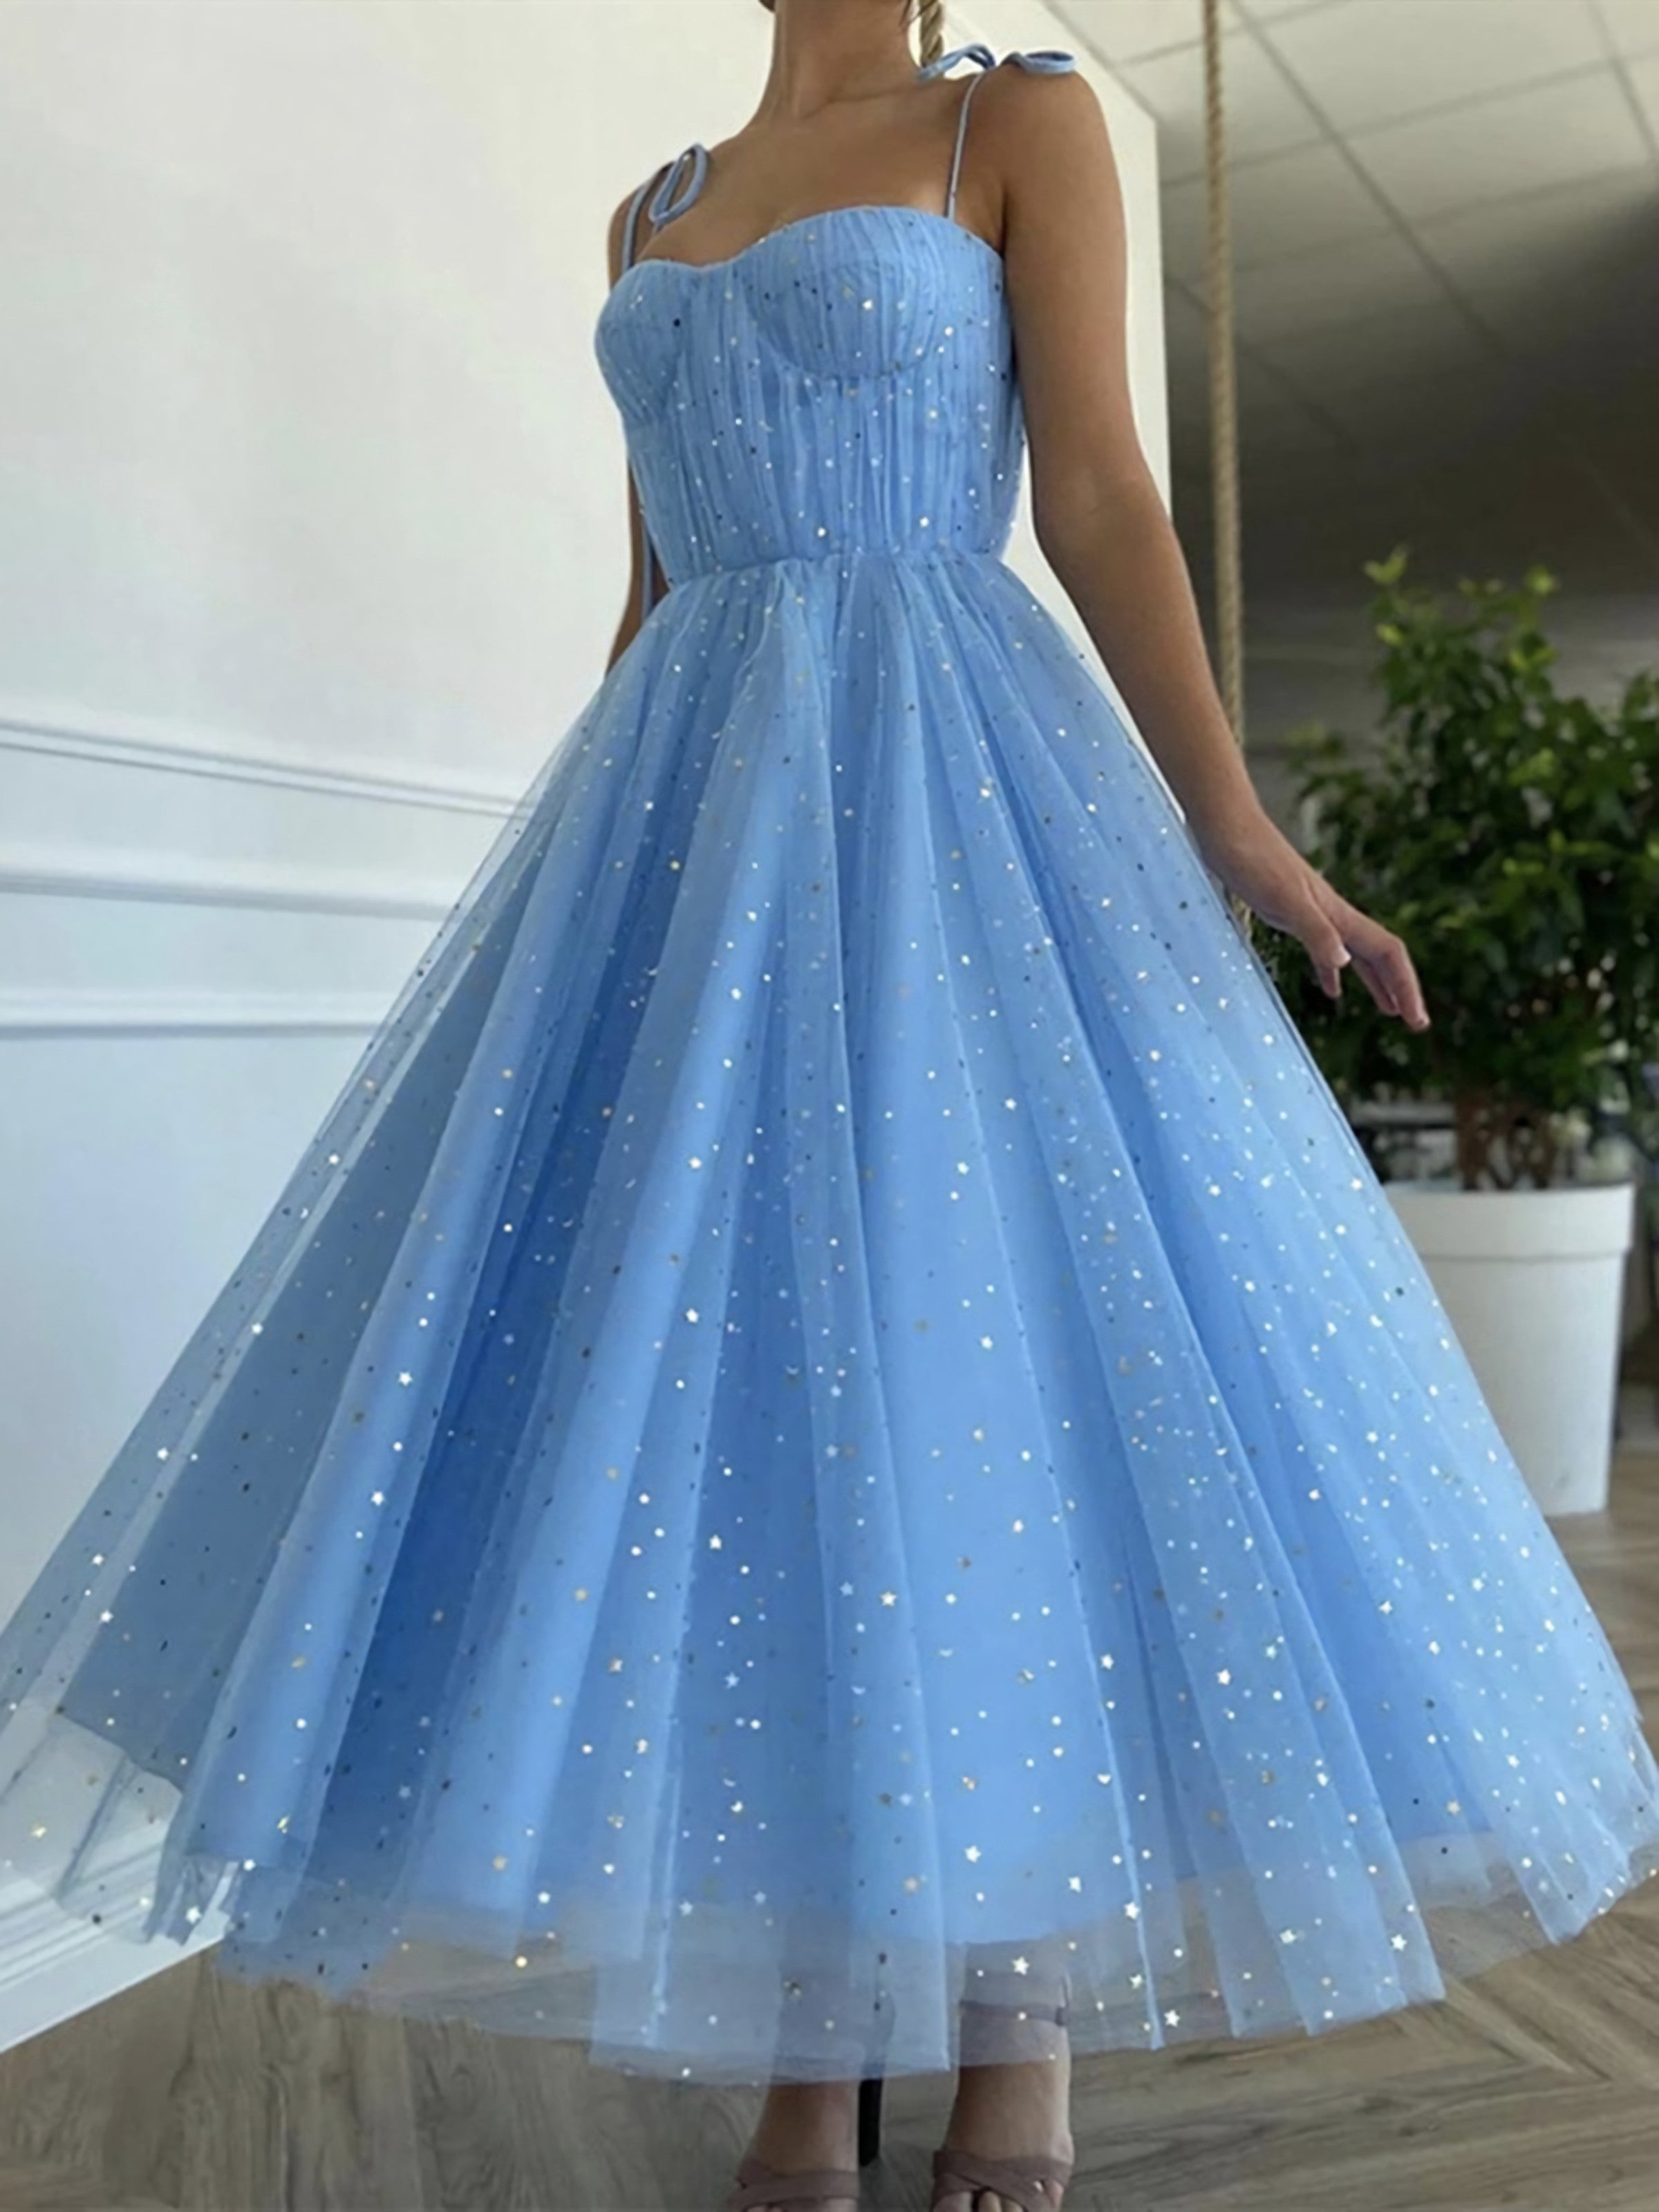 Spaghetti Straps Blue Tea Length Tulle Prom Dresses Blue Tea Length Formal Homecoming Dresses